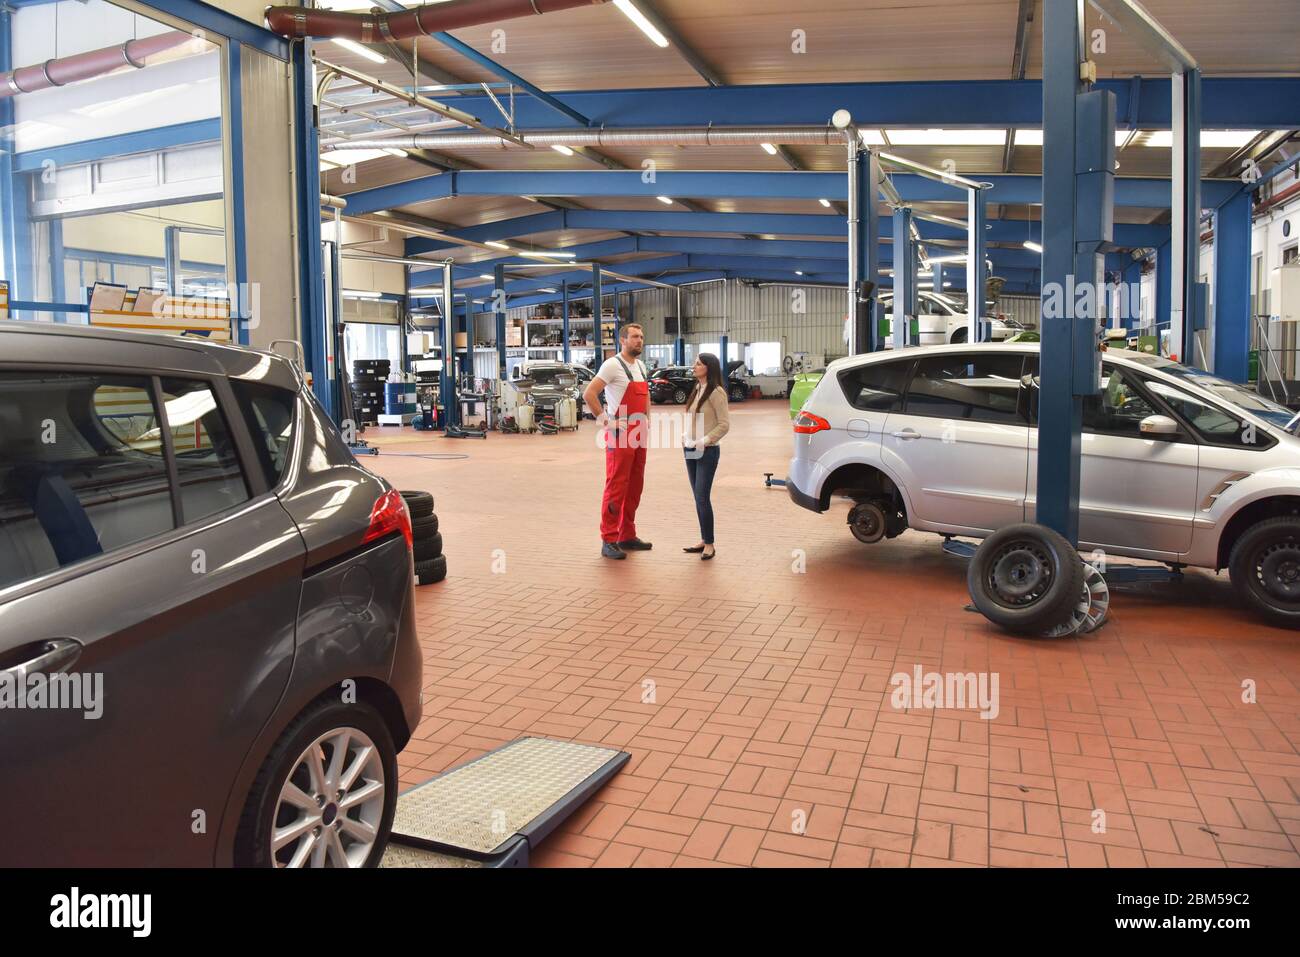 Kundendienst: Kfz-Mechaniker und Kunde besprechen die Reparatur eines Fahrzeugs vor Ort Stockfoto